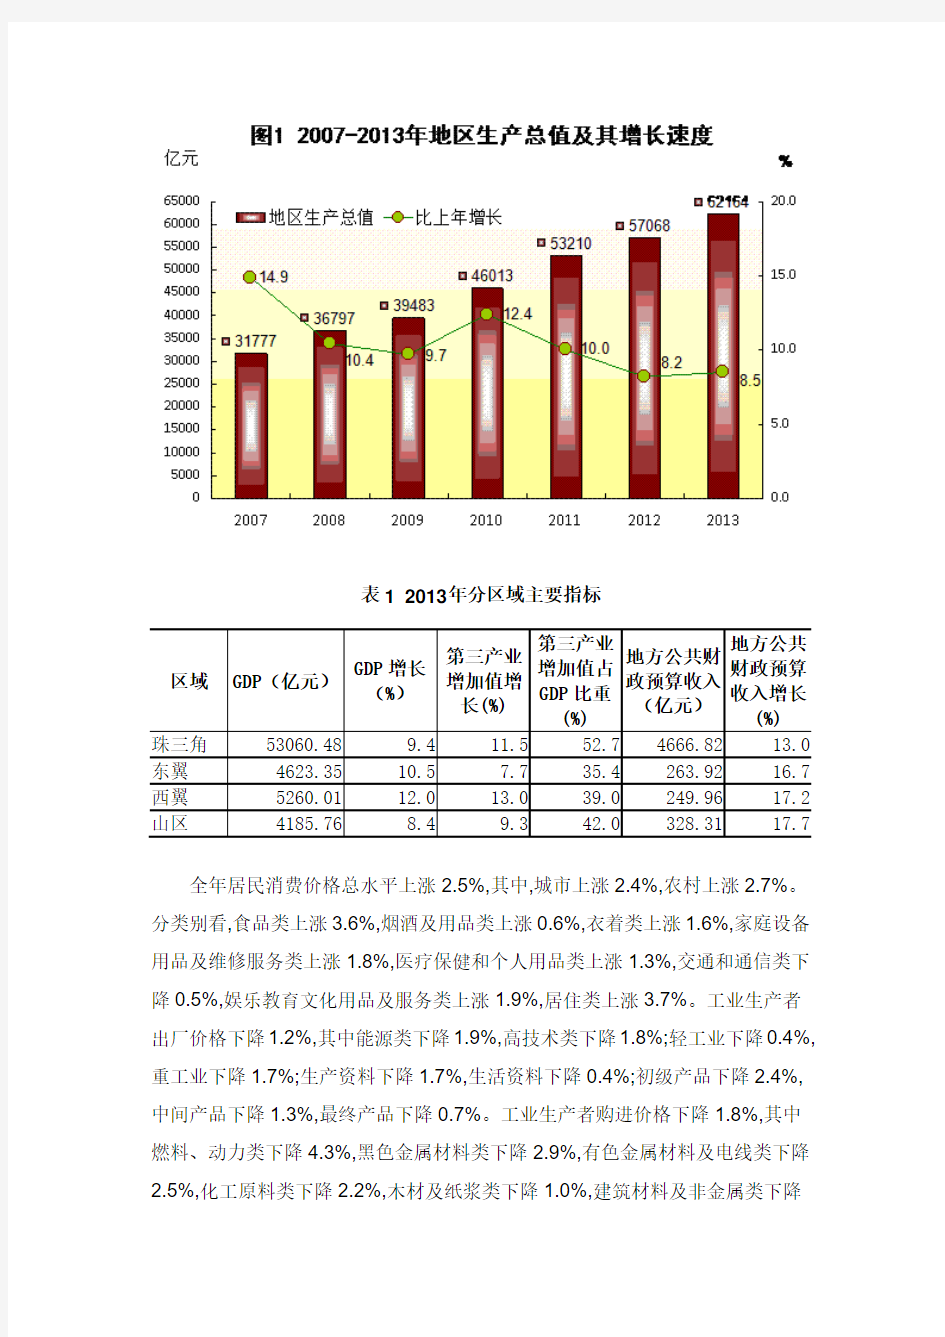 2013年广东国民经济和社会发展统计公报